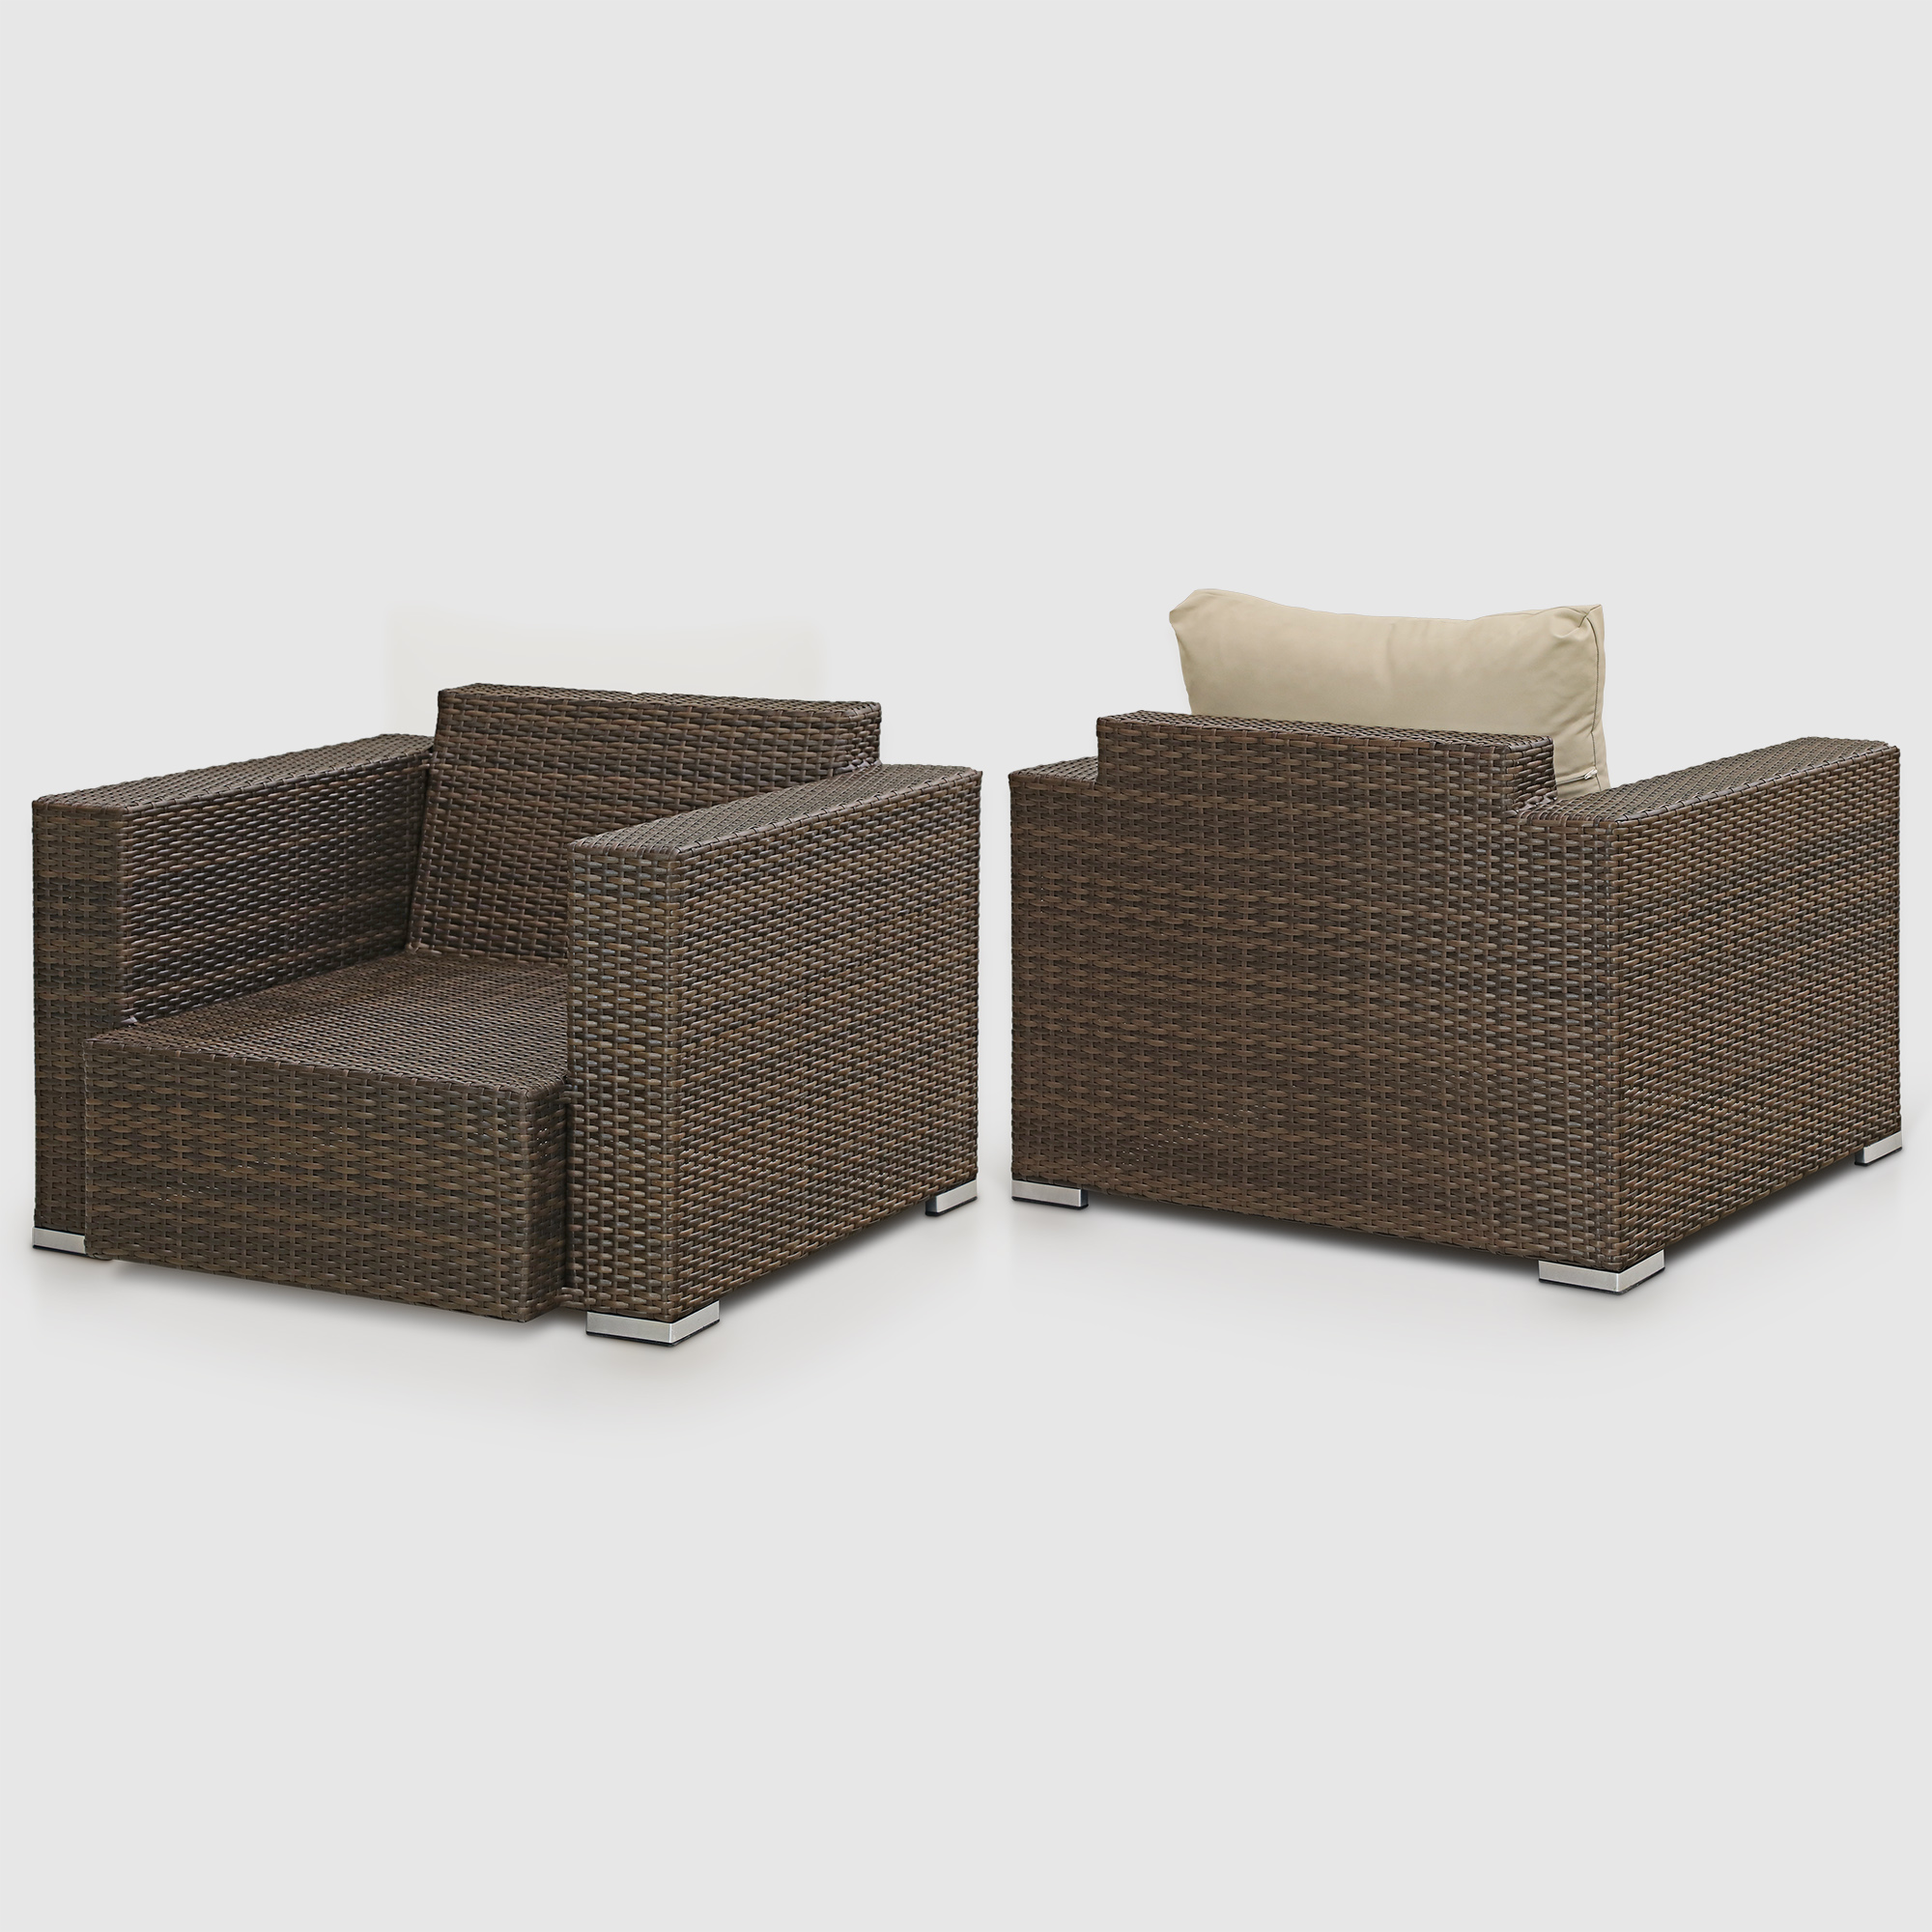 Комплект мебели Ns Rattan Cleo коричнево-бежевый 7 предметов, цвет коричневый, размер 199х68х72 - фото 11